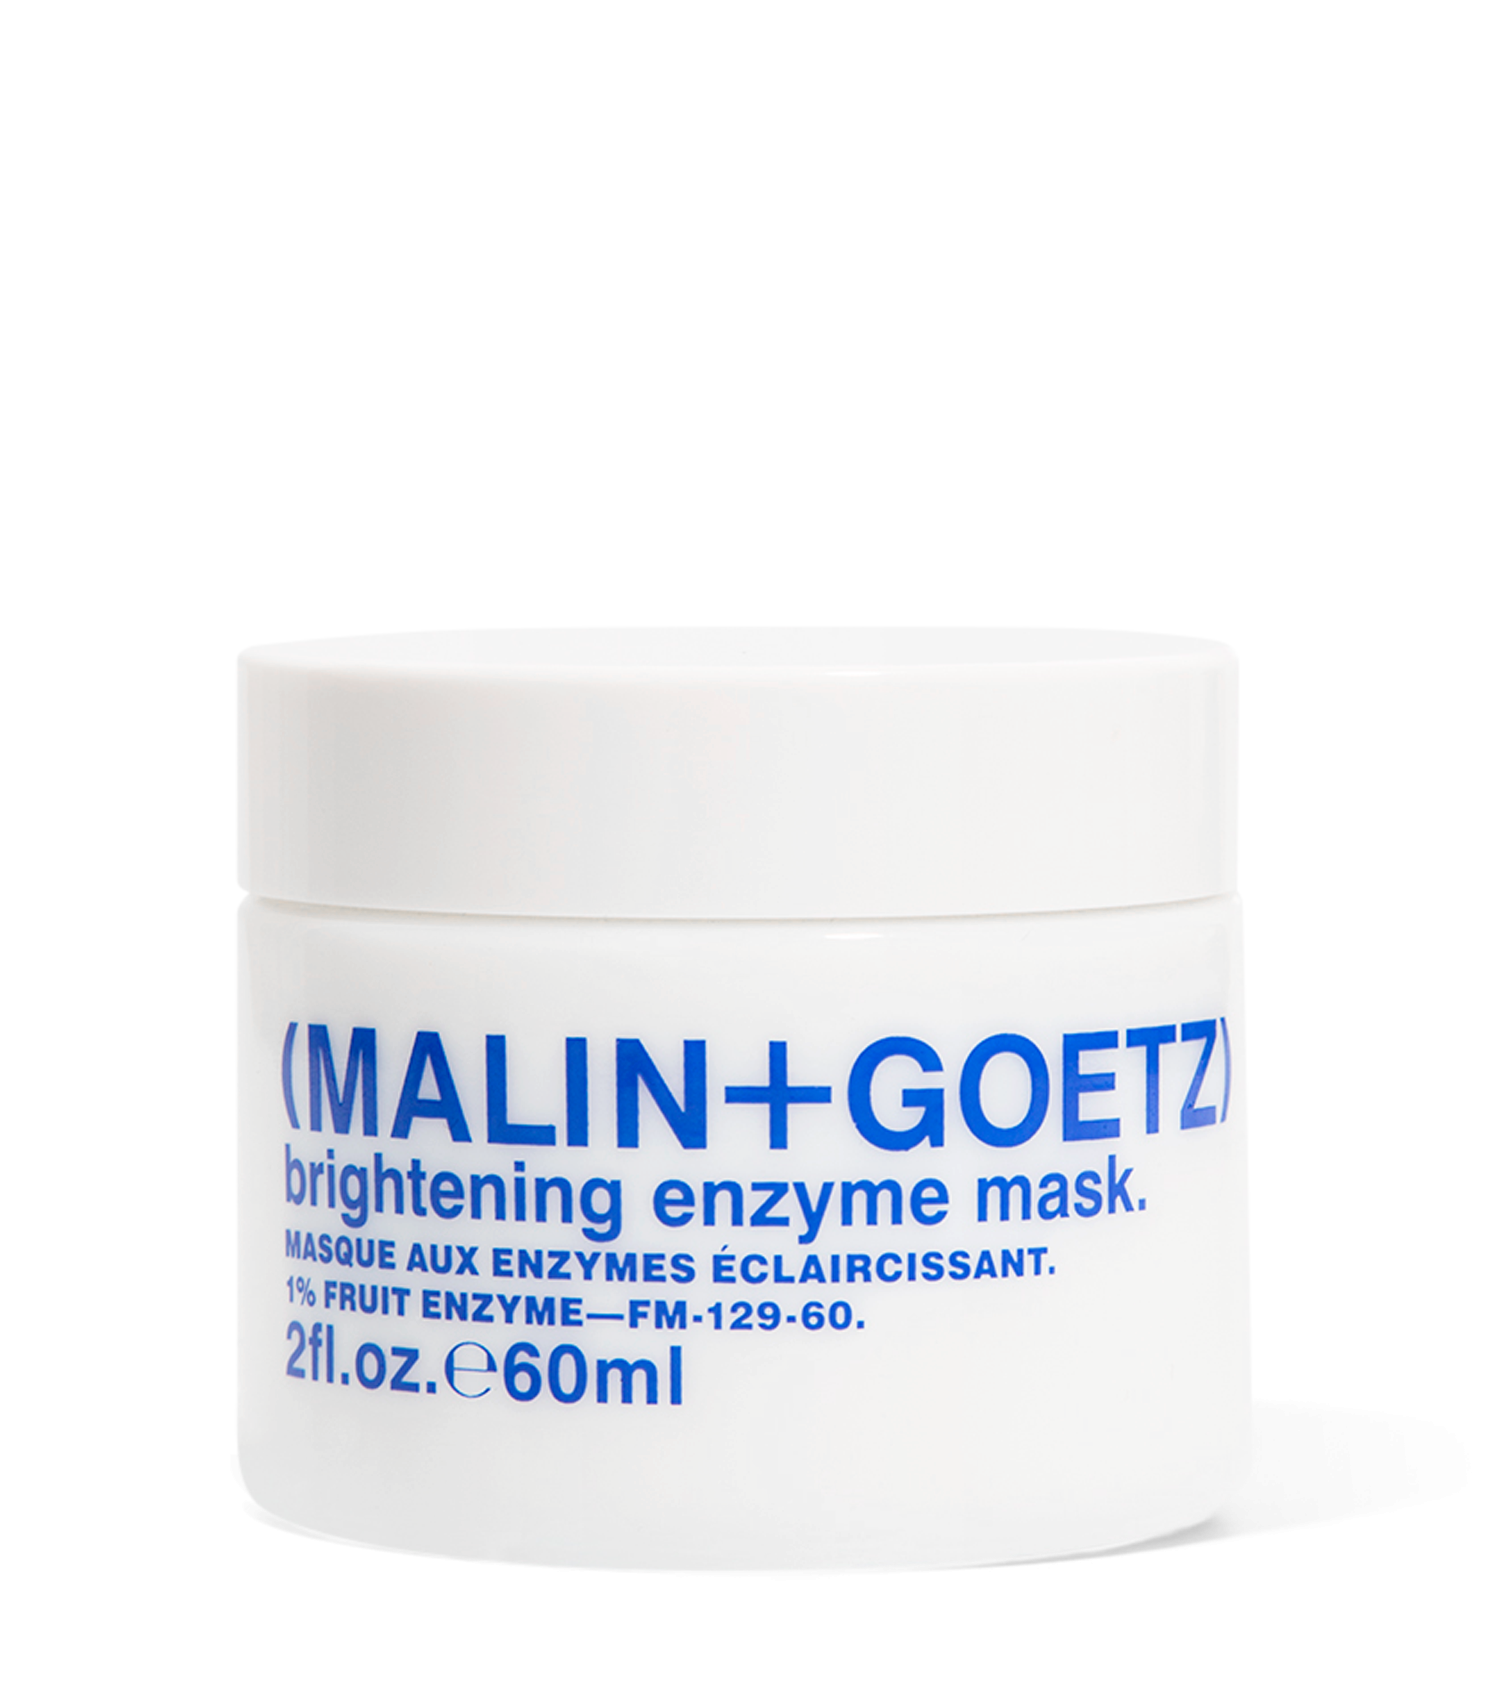 brightening enzyme mask. brightening enzyme mask. 1